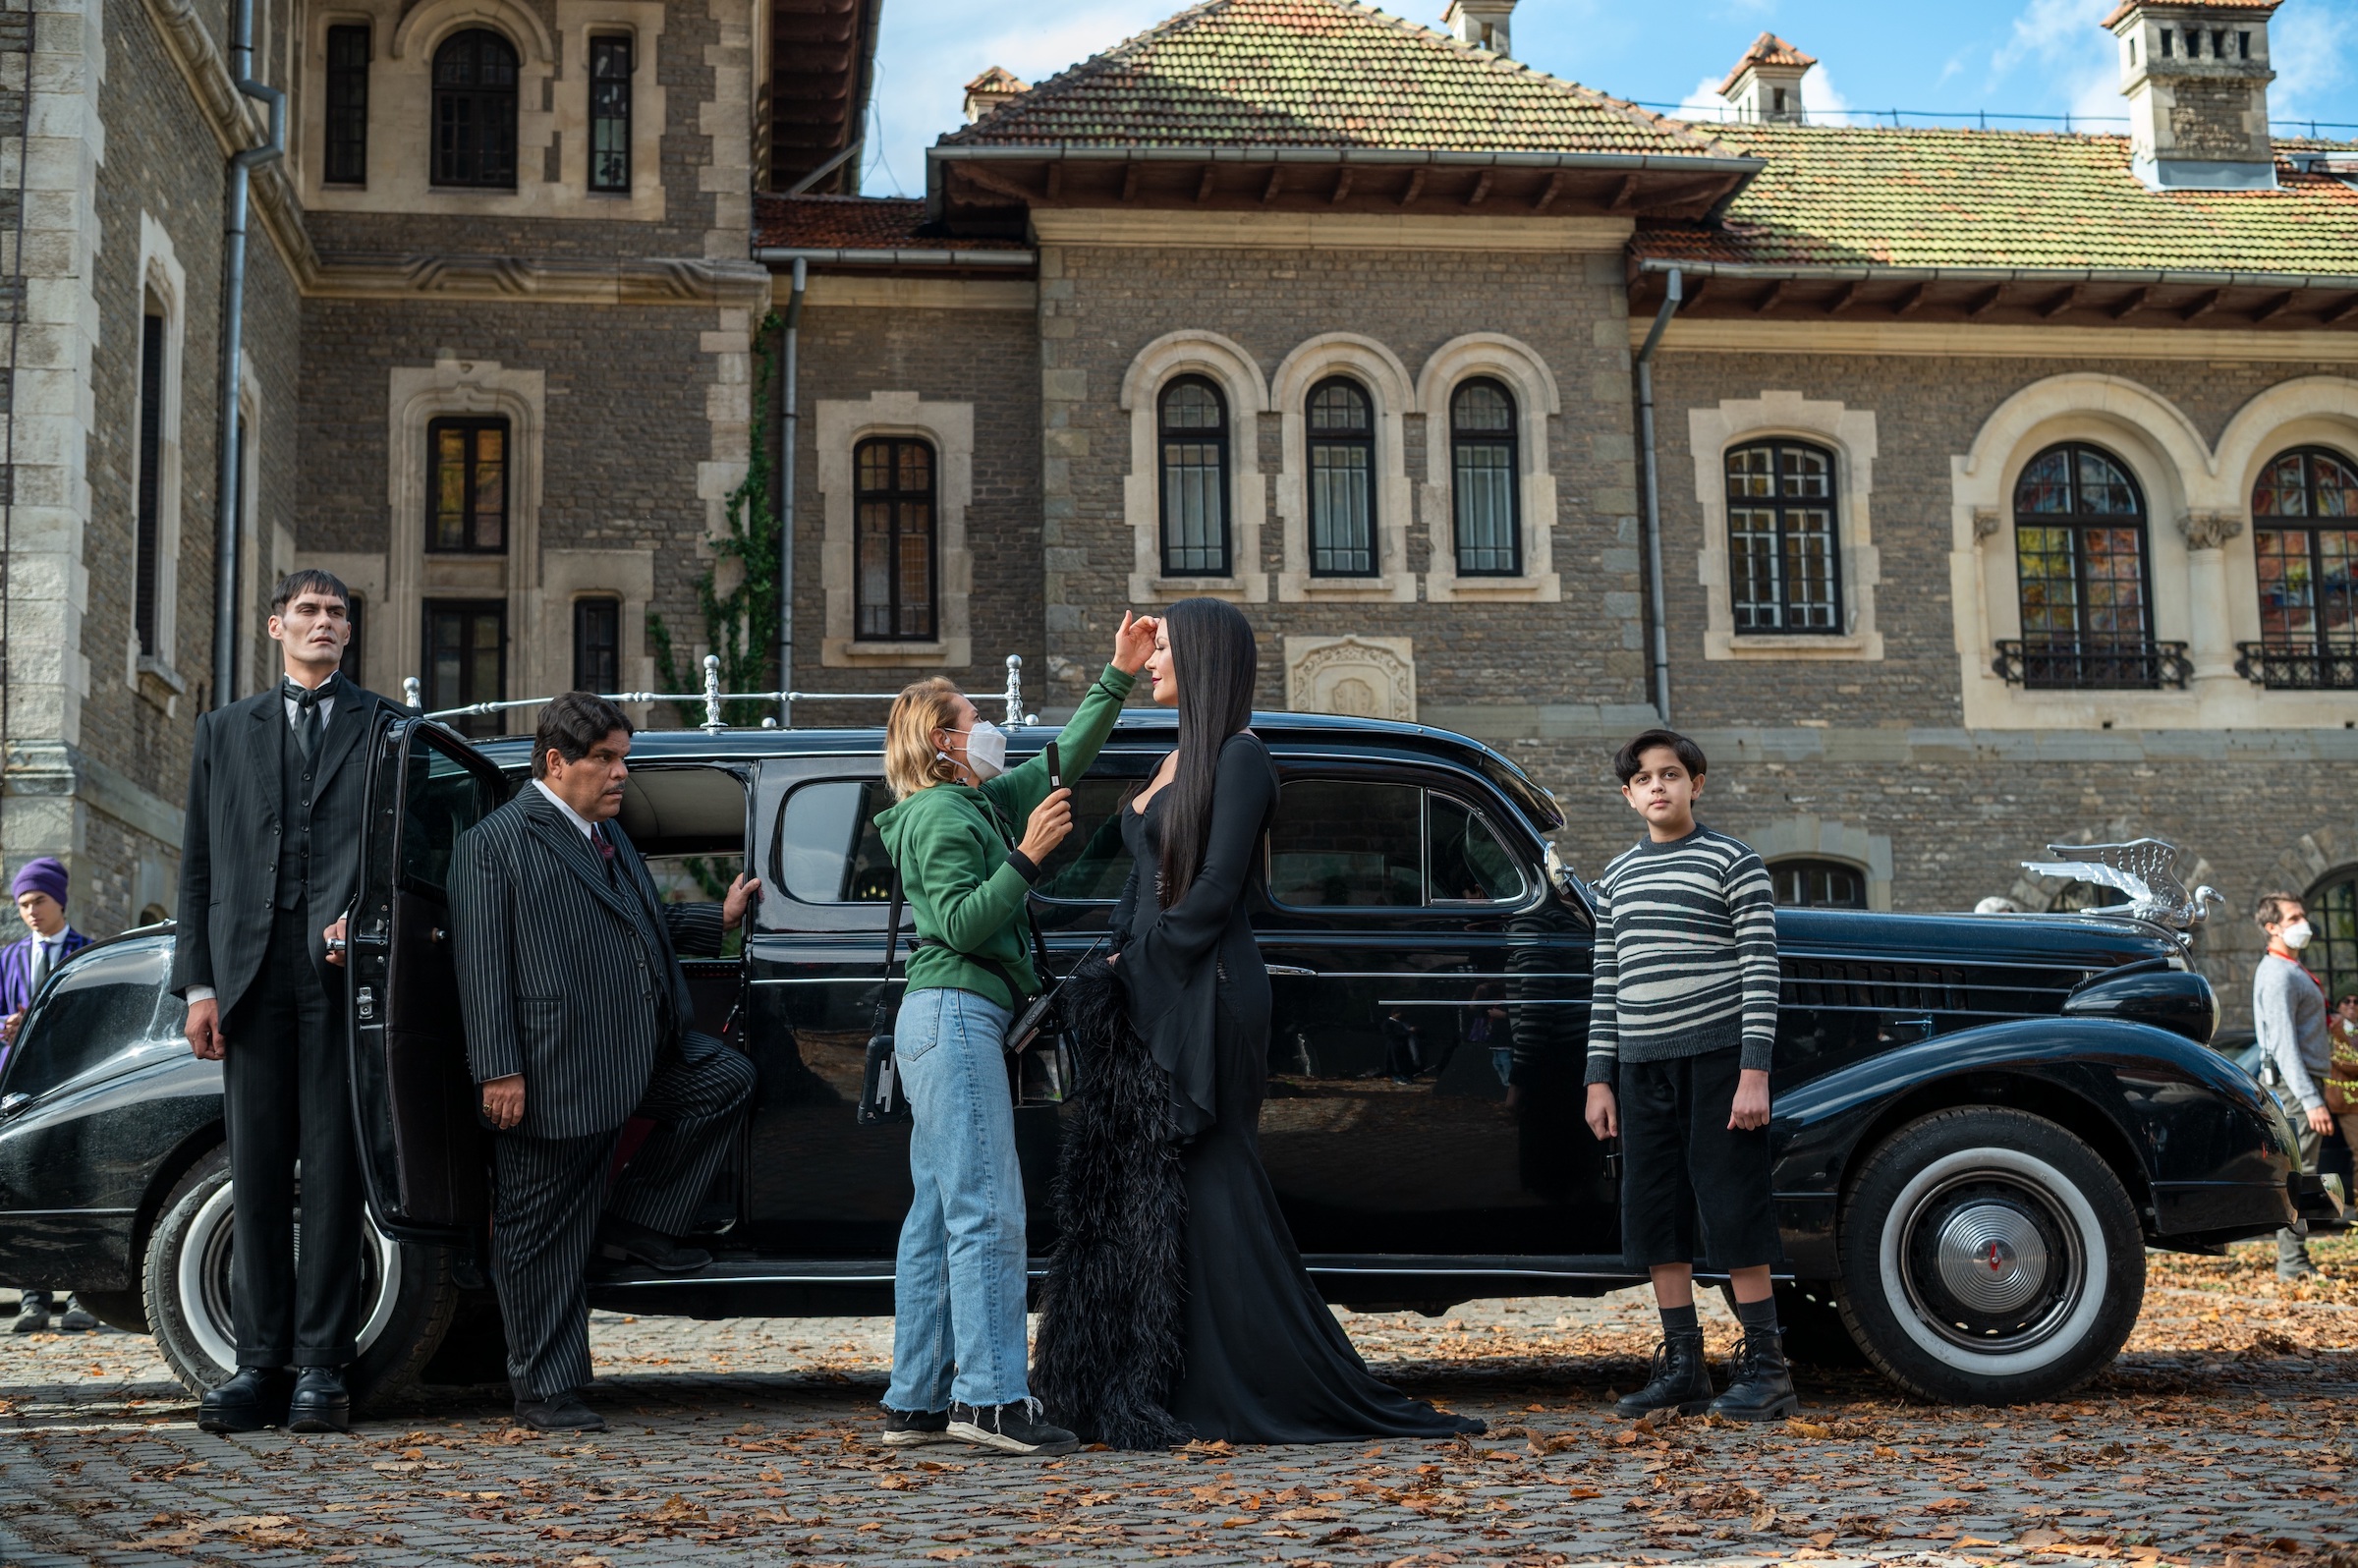 Butler Lurch (George Bursea), Gomez (Luis Guzman), Morticha (Catherine Zeta-Jones) and Pugsley (Isaac Ordonez) visit Nevermore Academy for Parents' Weekend.  (Vlad Choplea—Netflix)